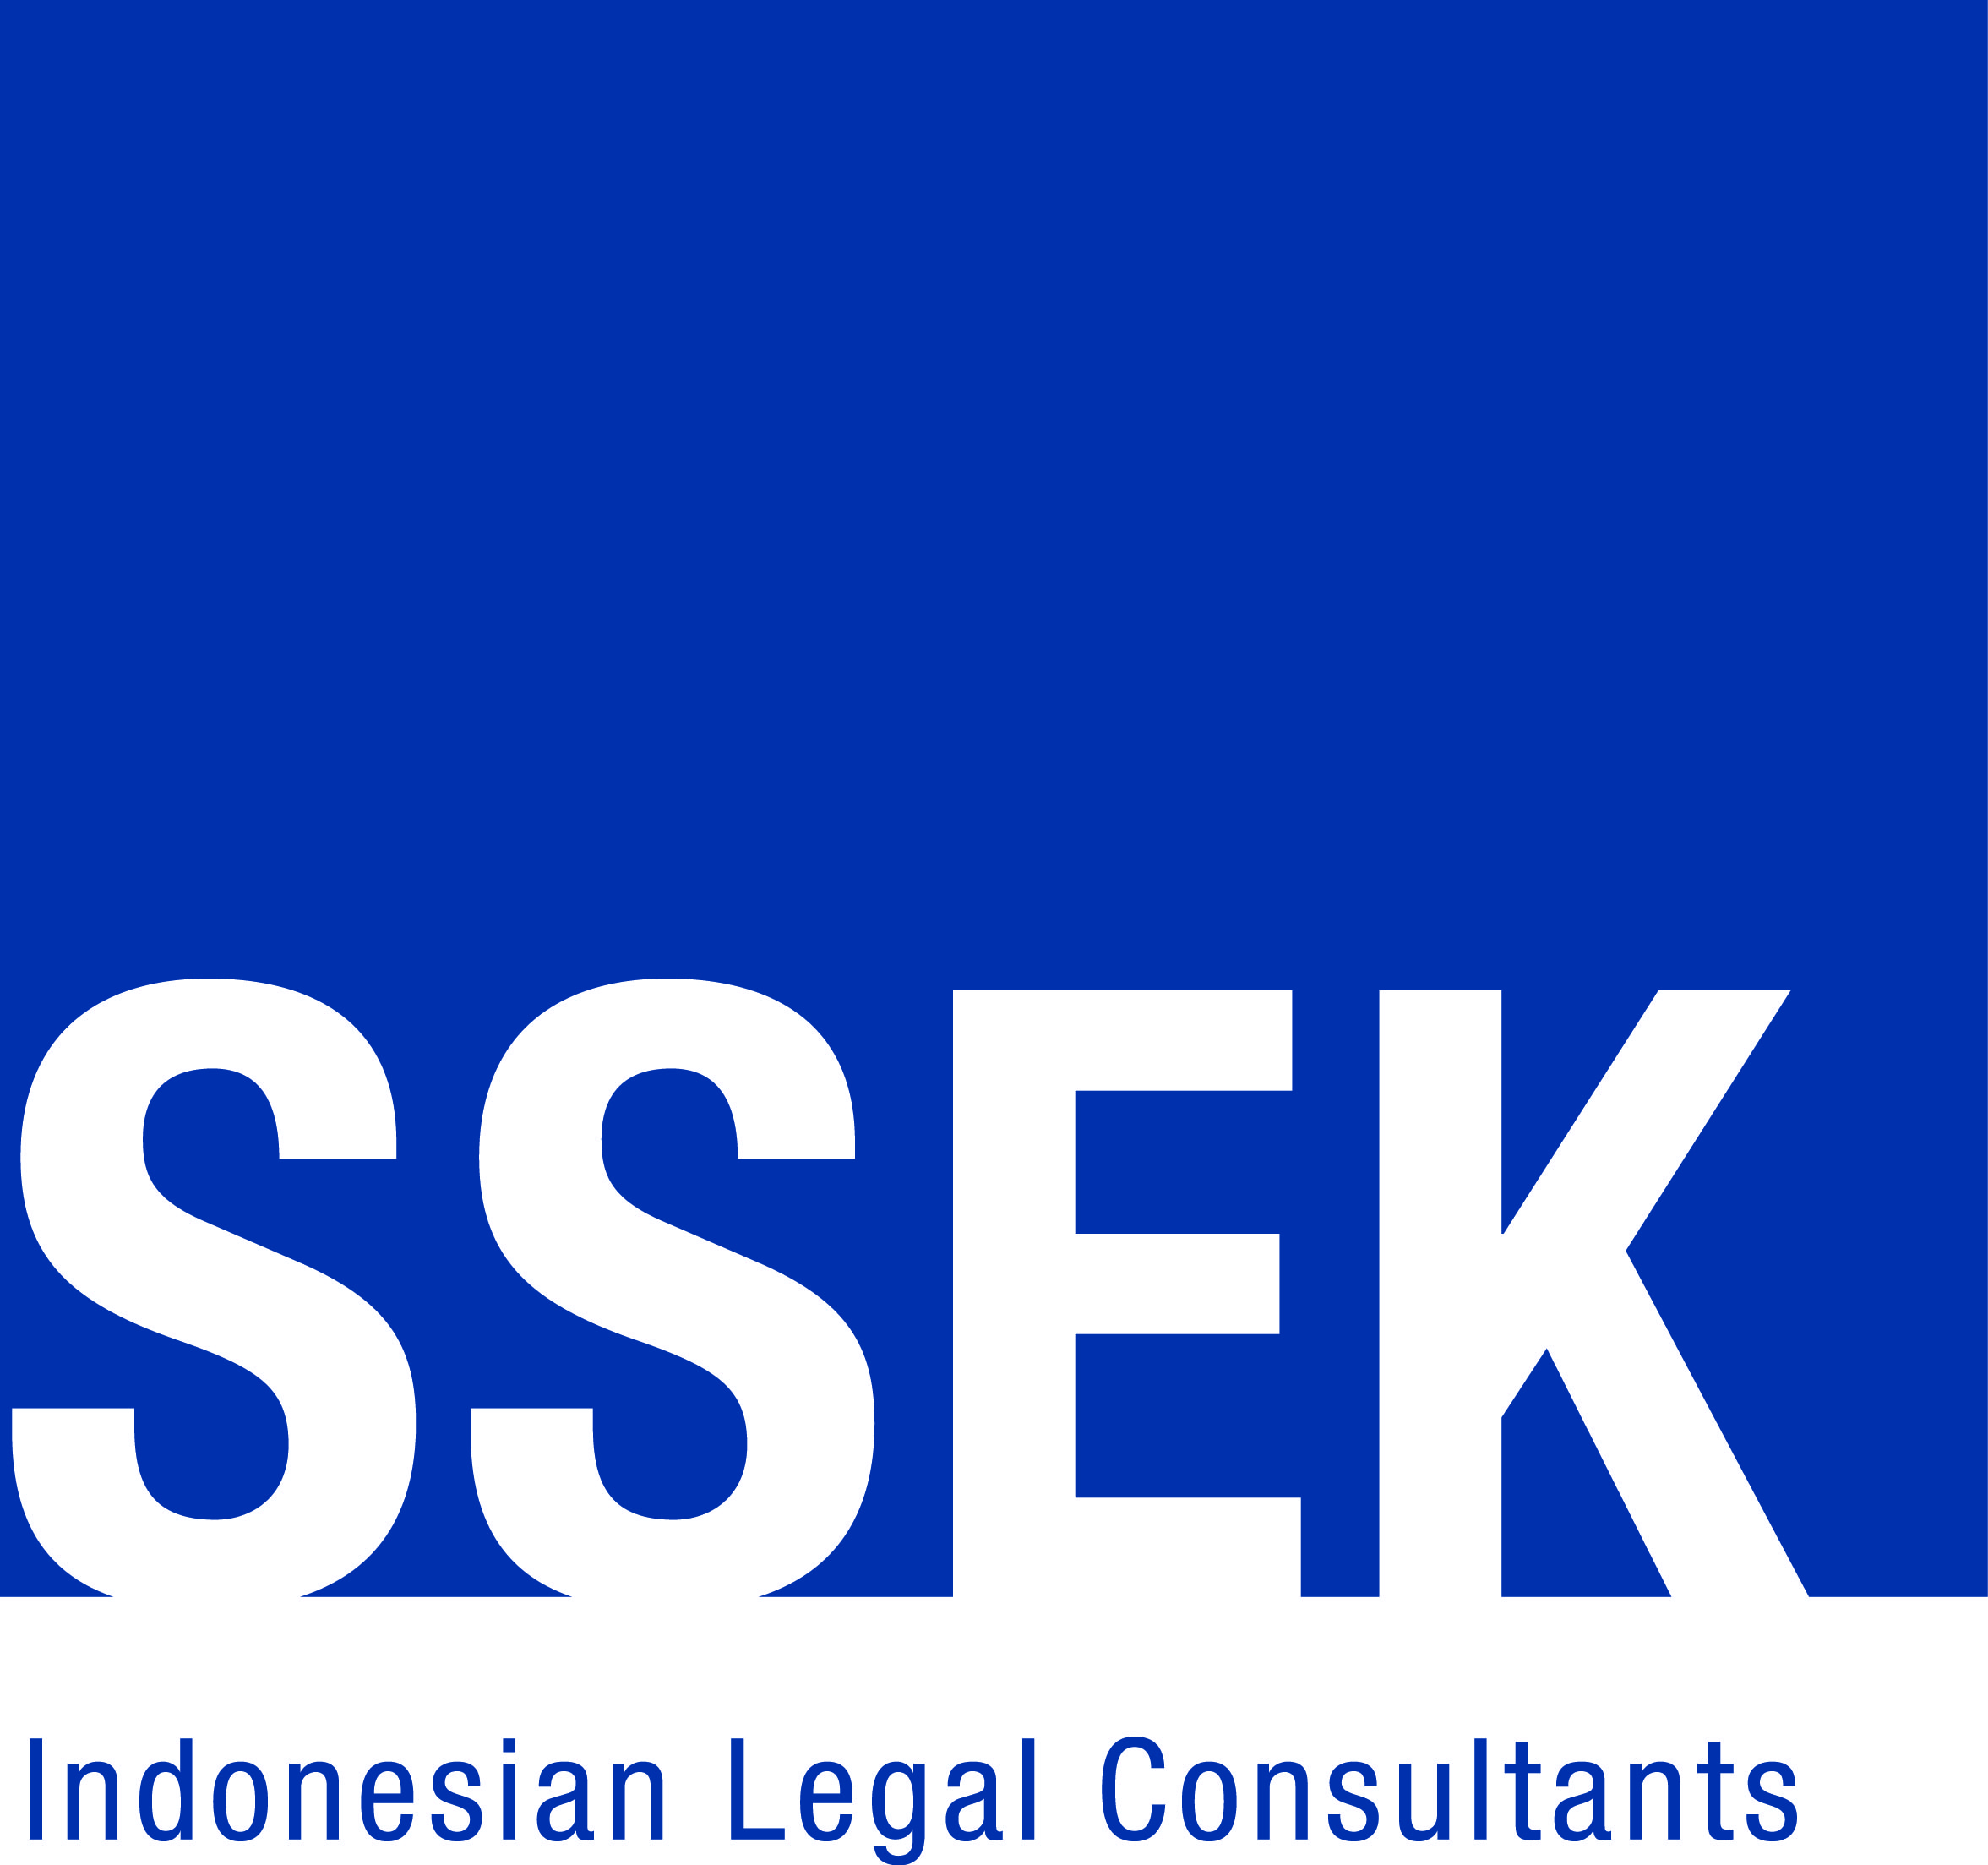 SSEK-logo-CMYK300